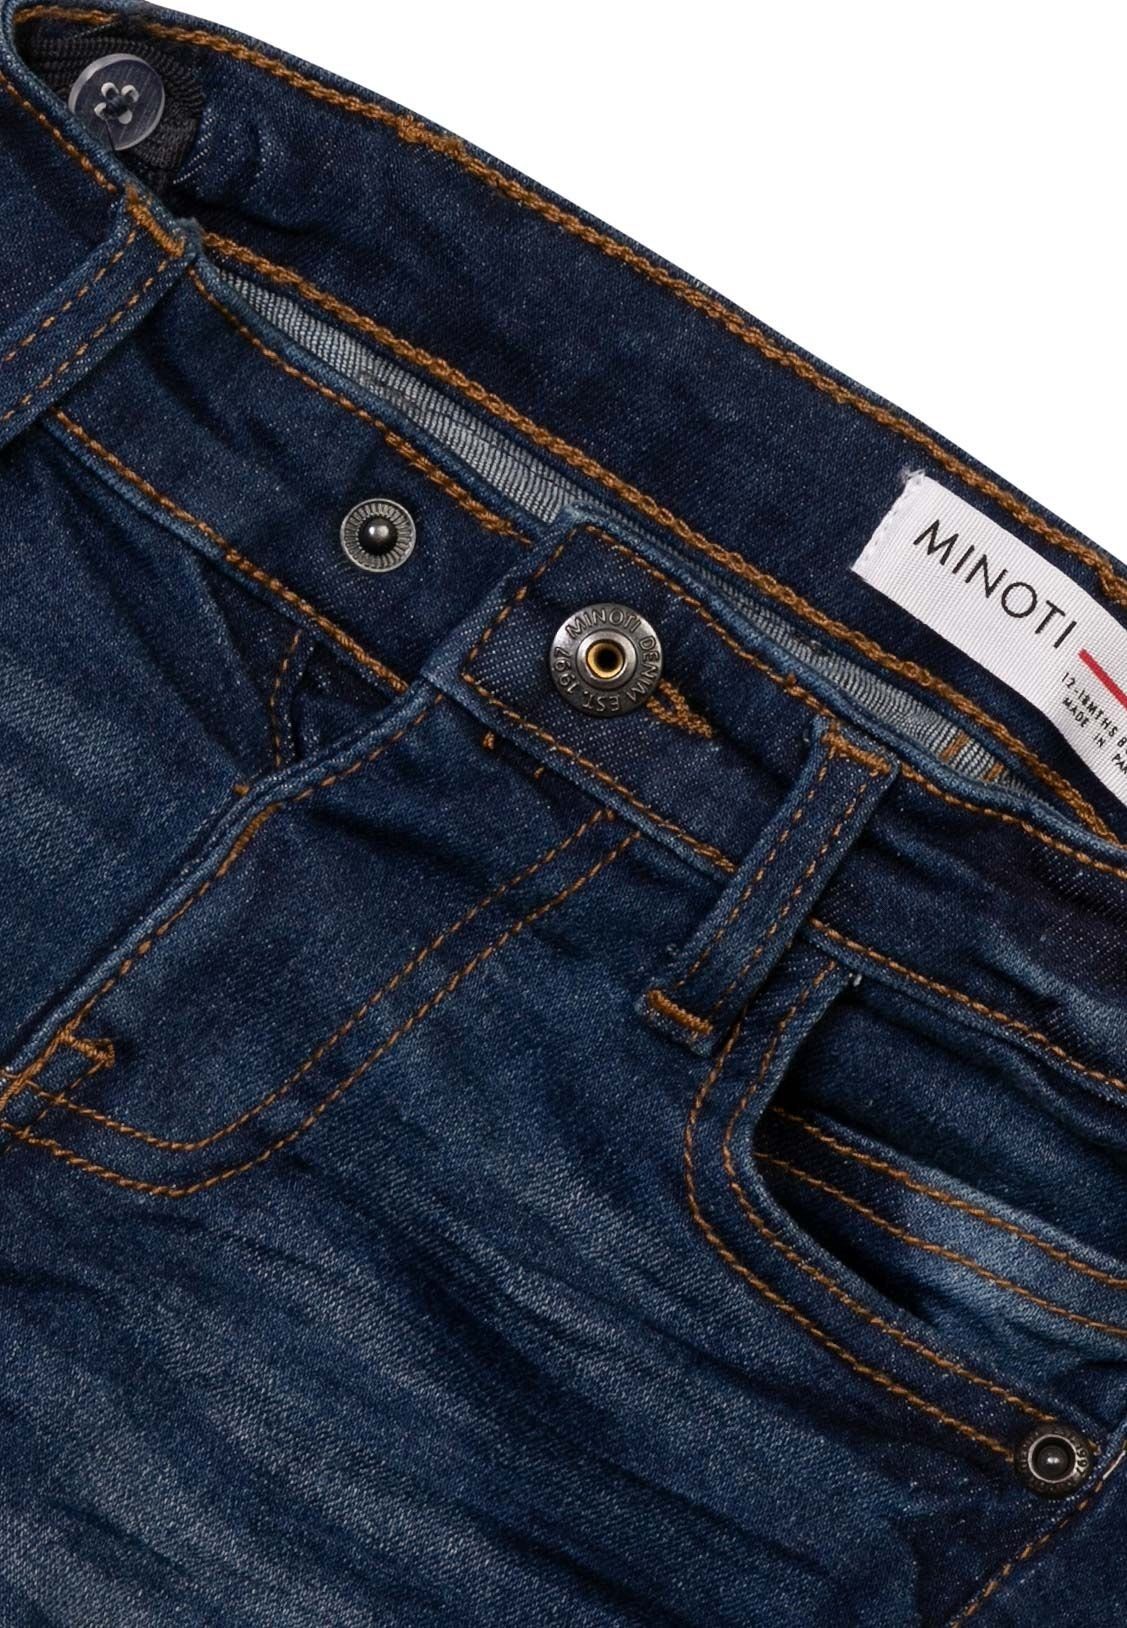 Jeans-Shorts Klassische Jeansshorts (1y-14y) Denim-Dunkelblau MINOTI